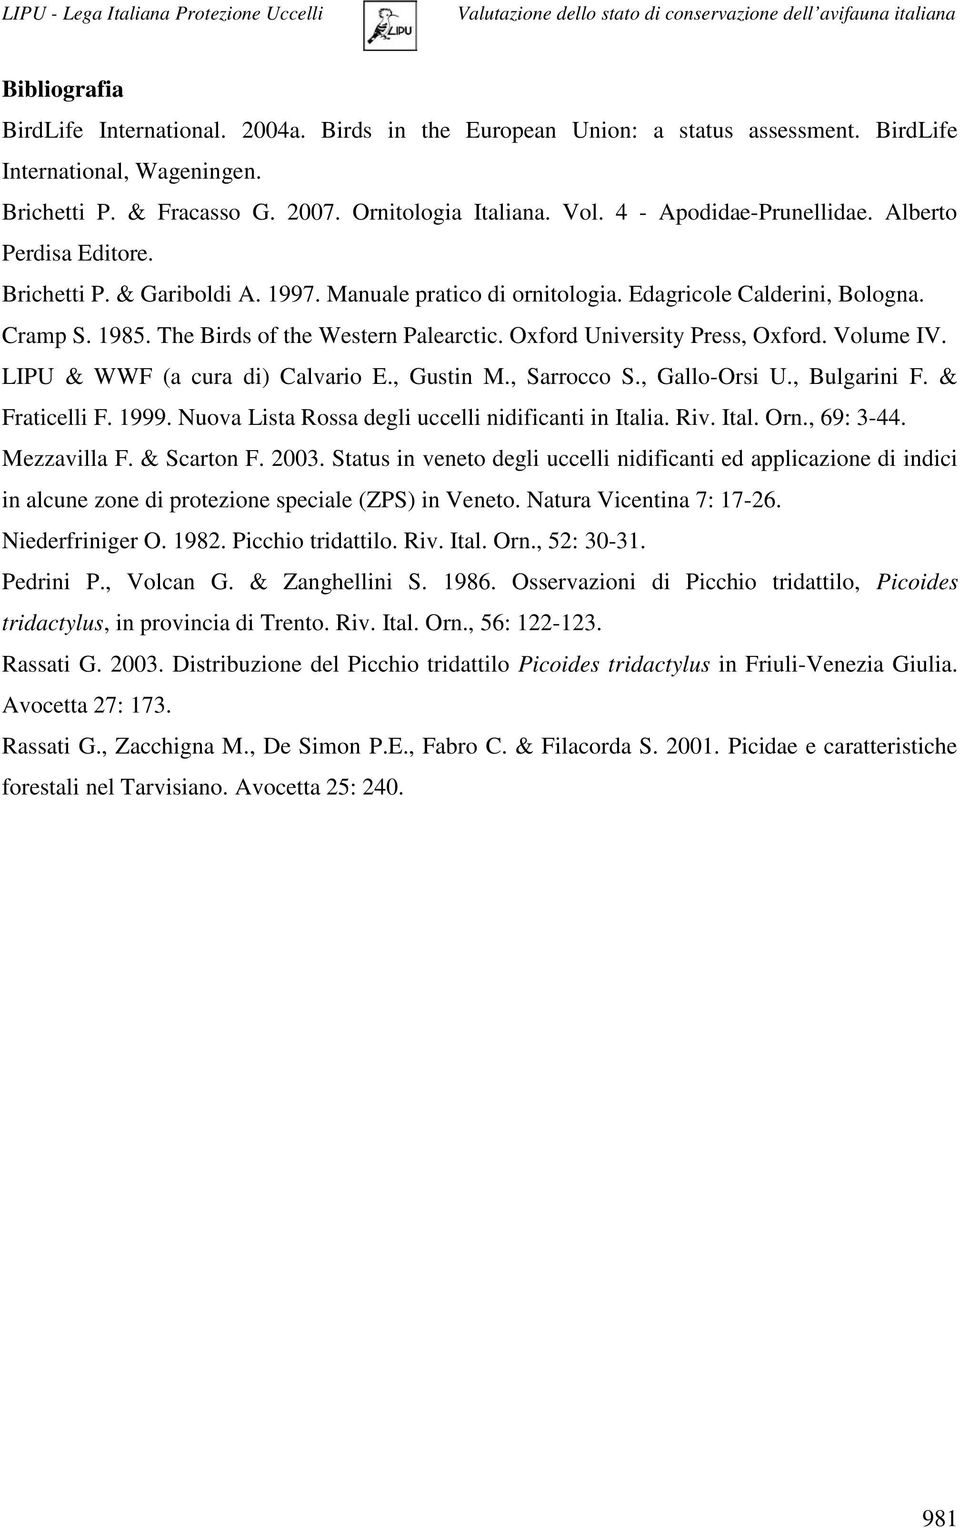 Oxford University Press, Oxford. Volume IV. LIPU & WWF (a cura di) Calvario E., Gustin M., Sarrocco S., Gallo-Orsi U., Bulgarini F. & Fraticelli F. 1999.